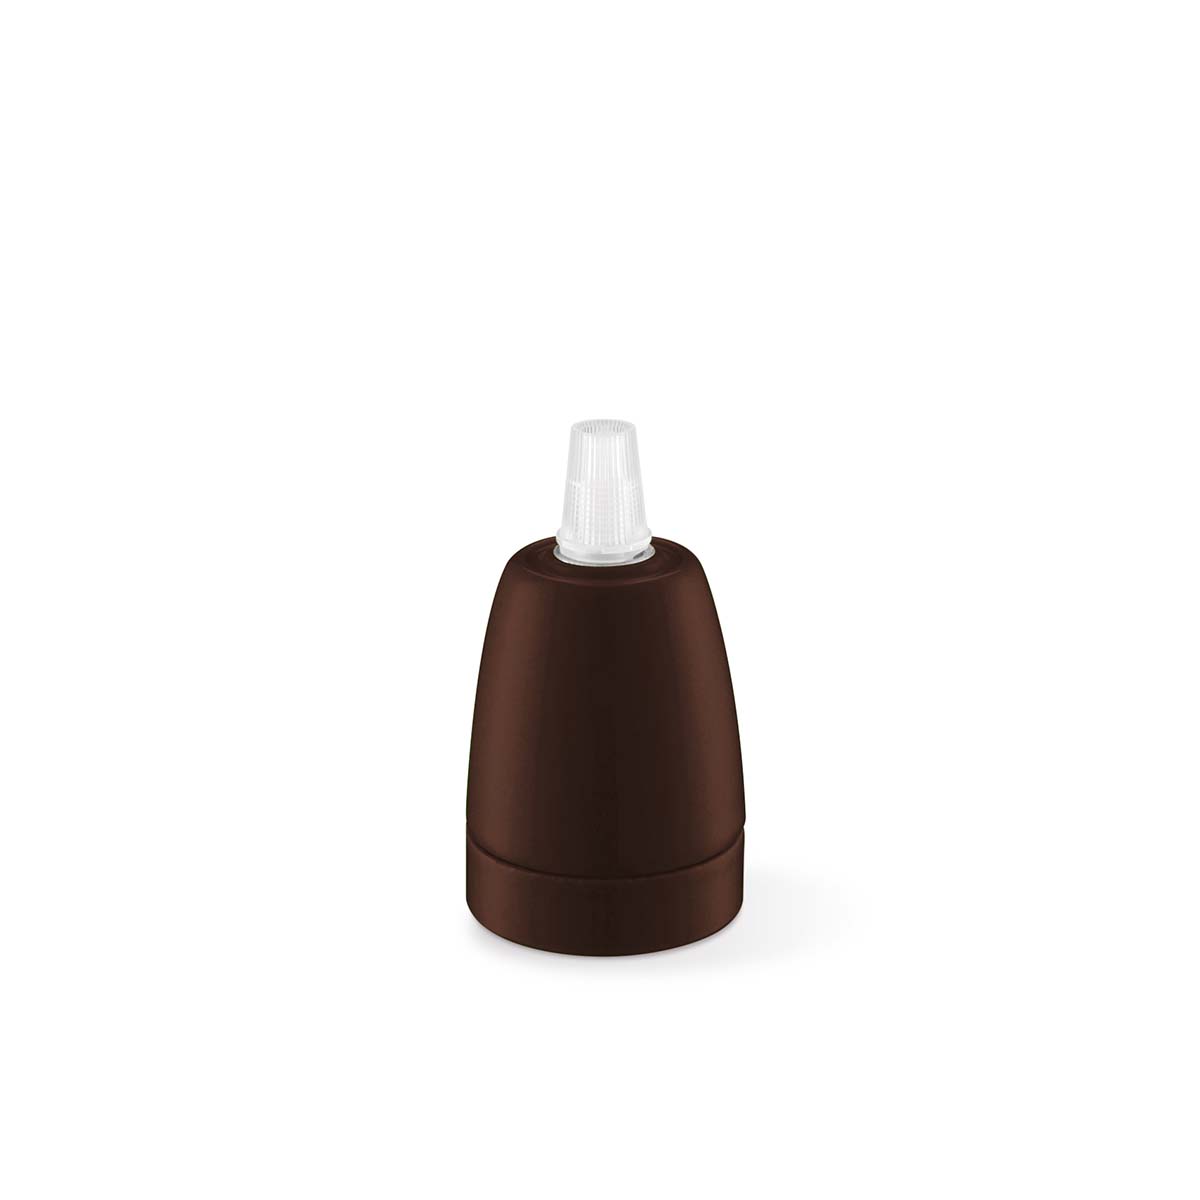 Tangla lighting - TLLH025BN - lamp holder porcelain - E27 - pot - brown